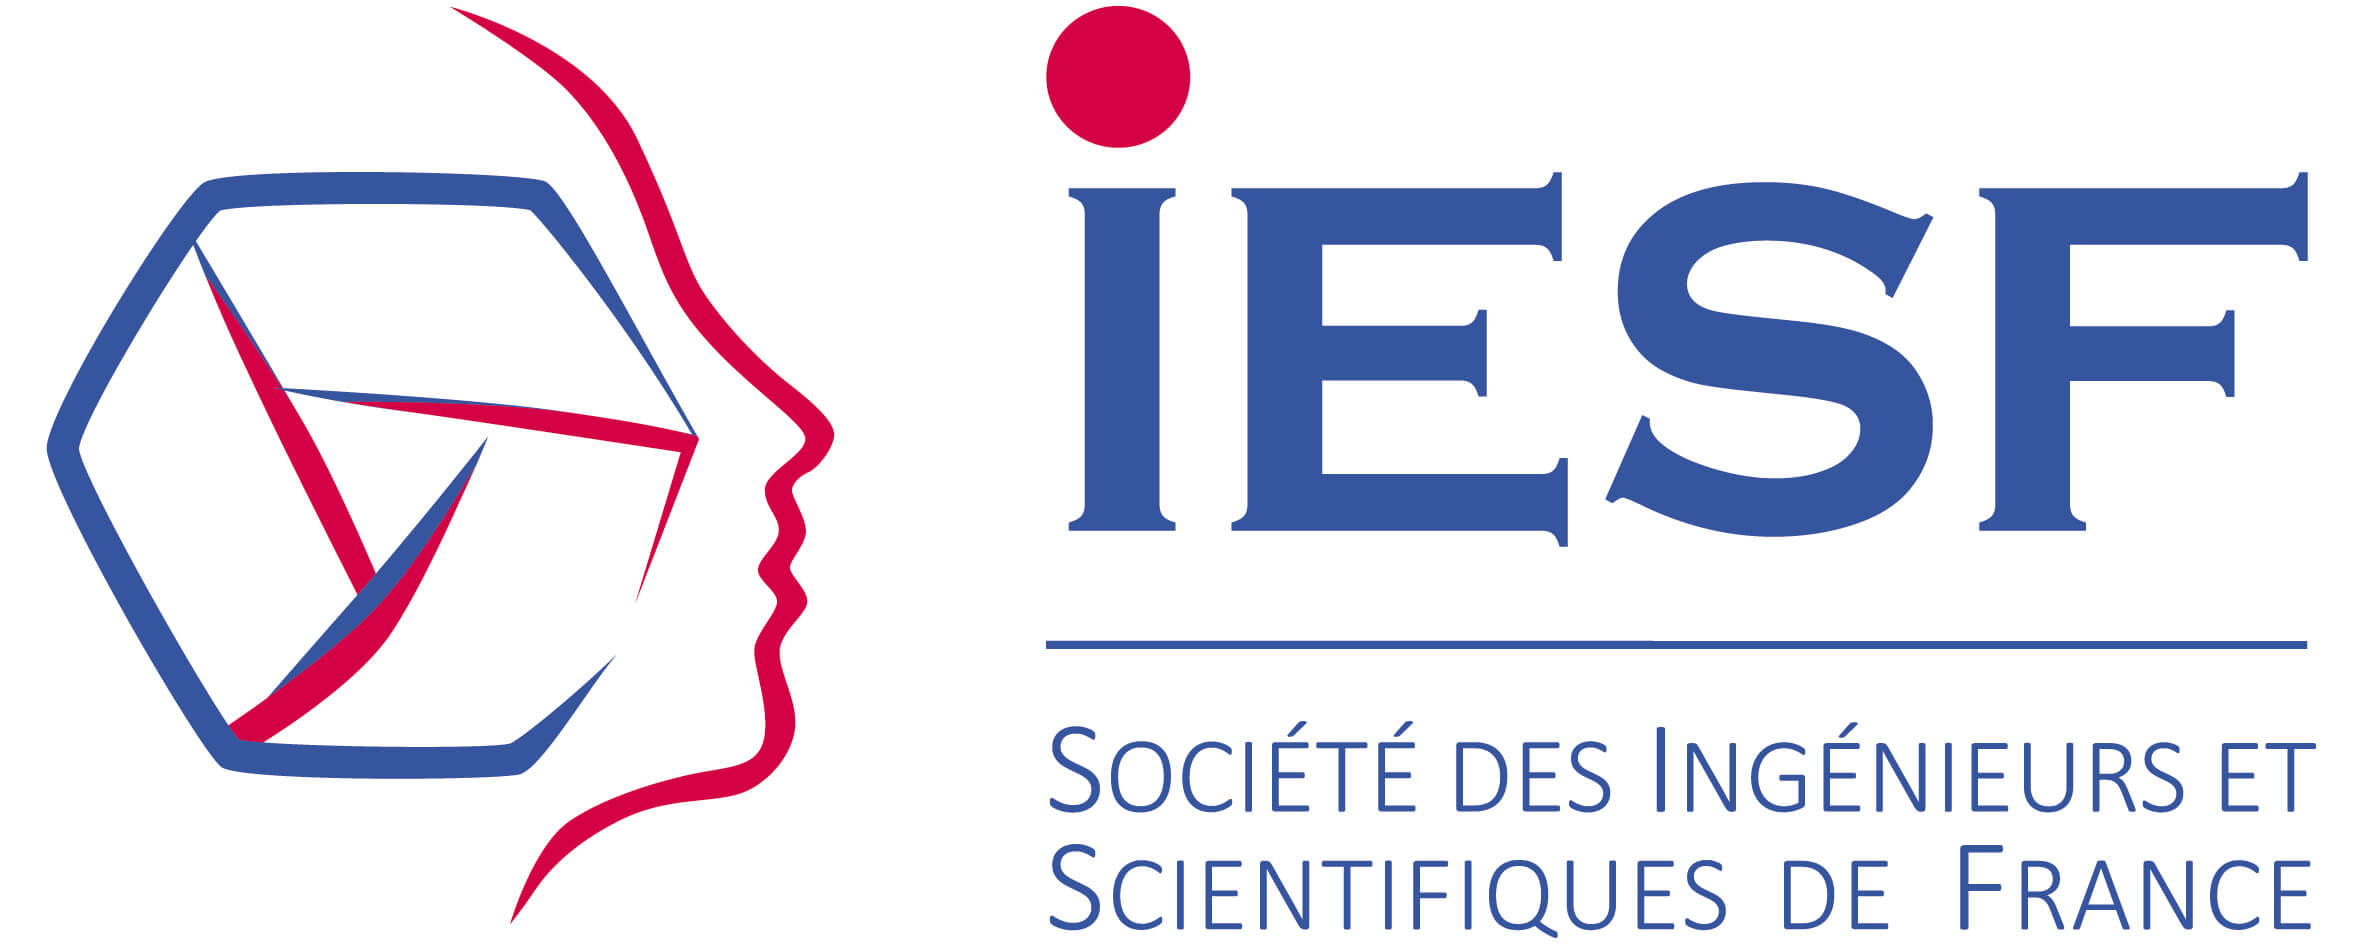 Le Patrimoine scientifique industriel et social davenir pour ingenieurs scientifiques de France